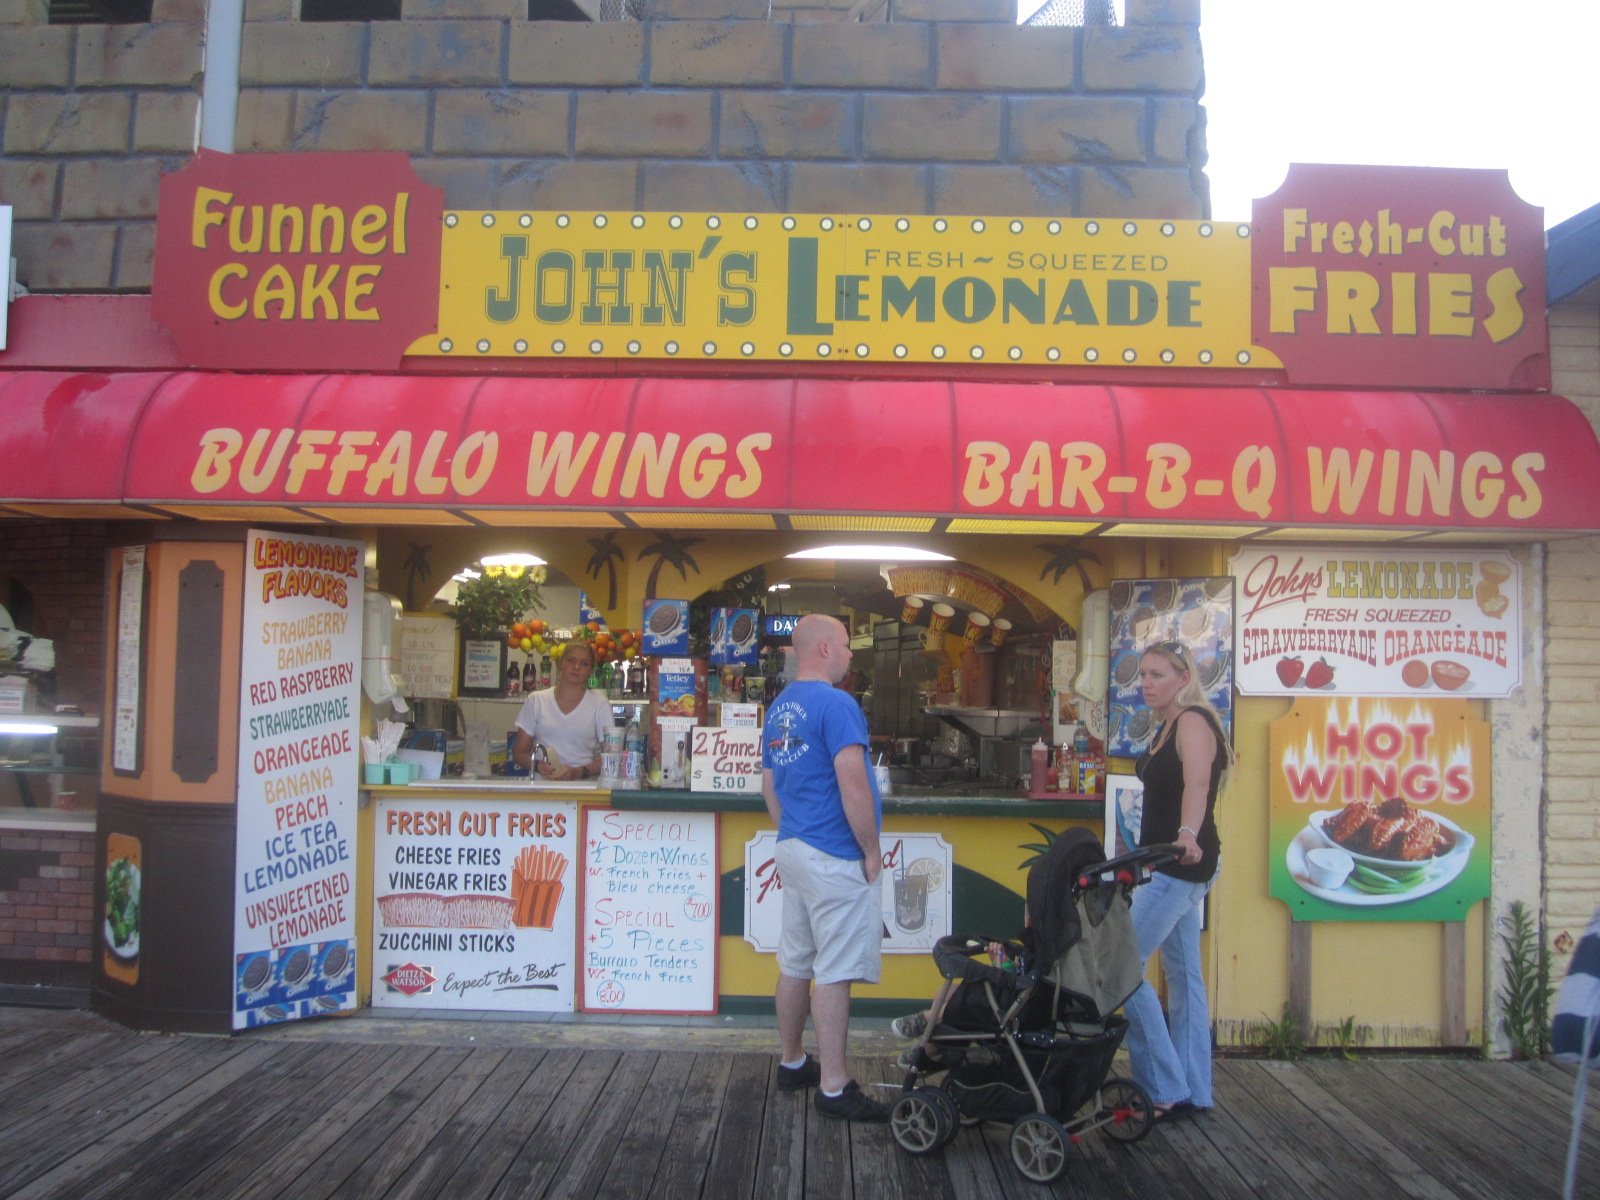 John's Lemonade - Funnel cake, fresh-cut fries, buffalo wings, bar-b-q wings - OCNJ